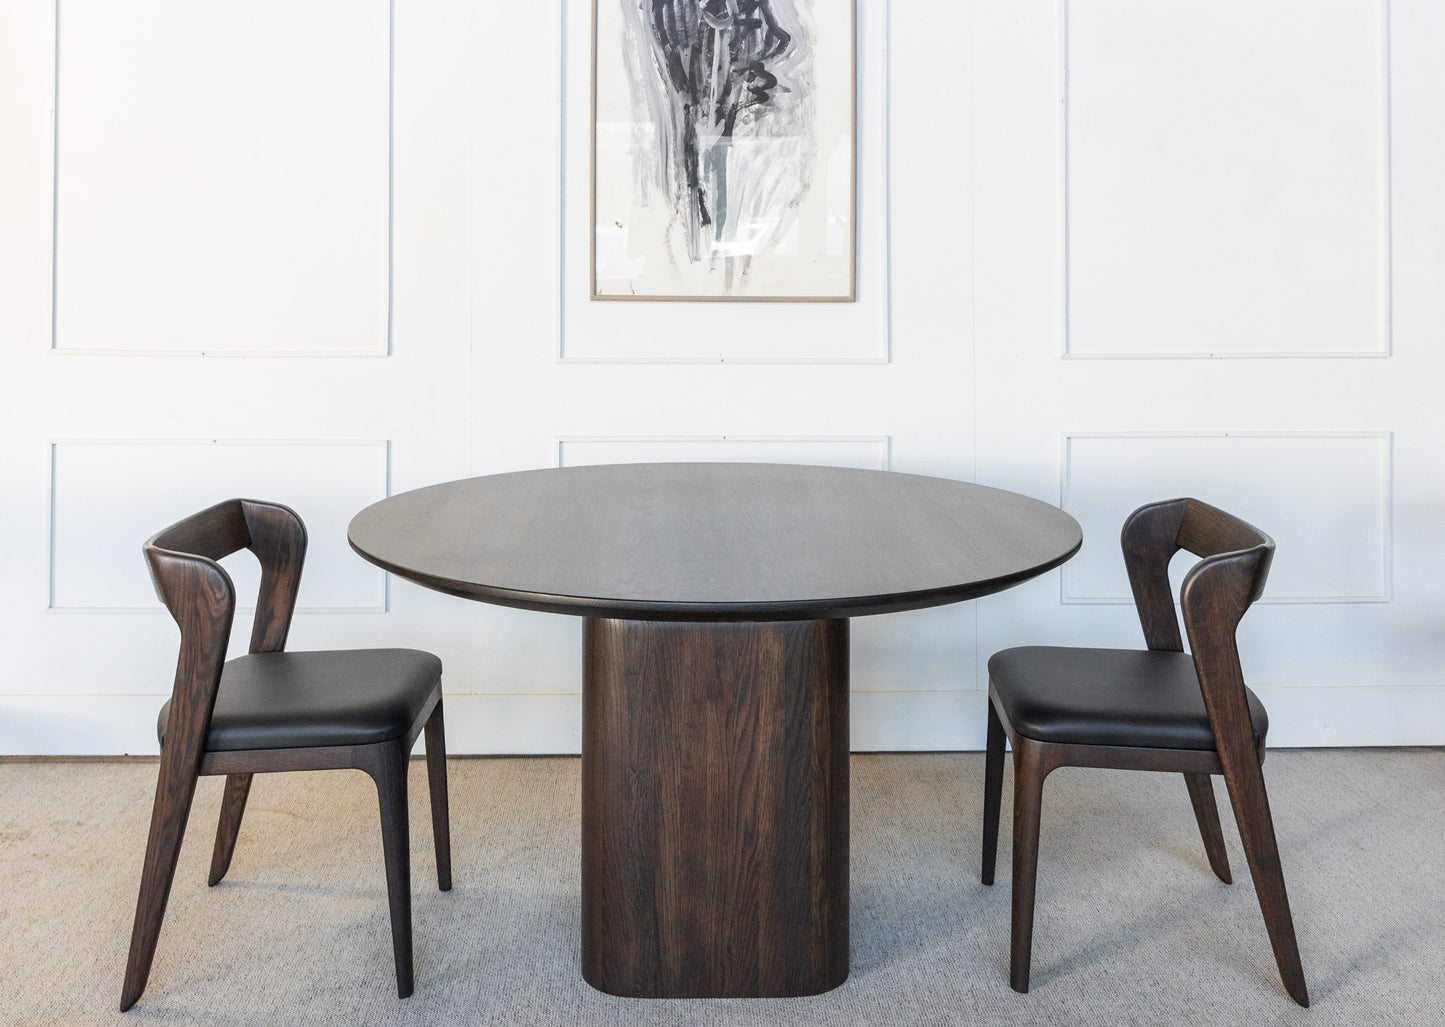 Spisegruppen Lervik består av ett rundt spisebord (Lofoten) og seks stoler (Vera). Bord og stoler er laget i heltre eik. Sitte delen er laget av naturlig skinn.